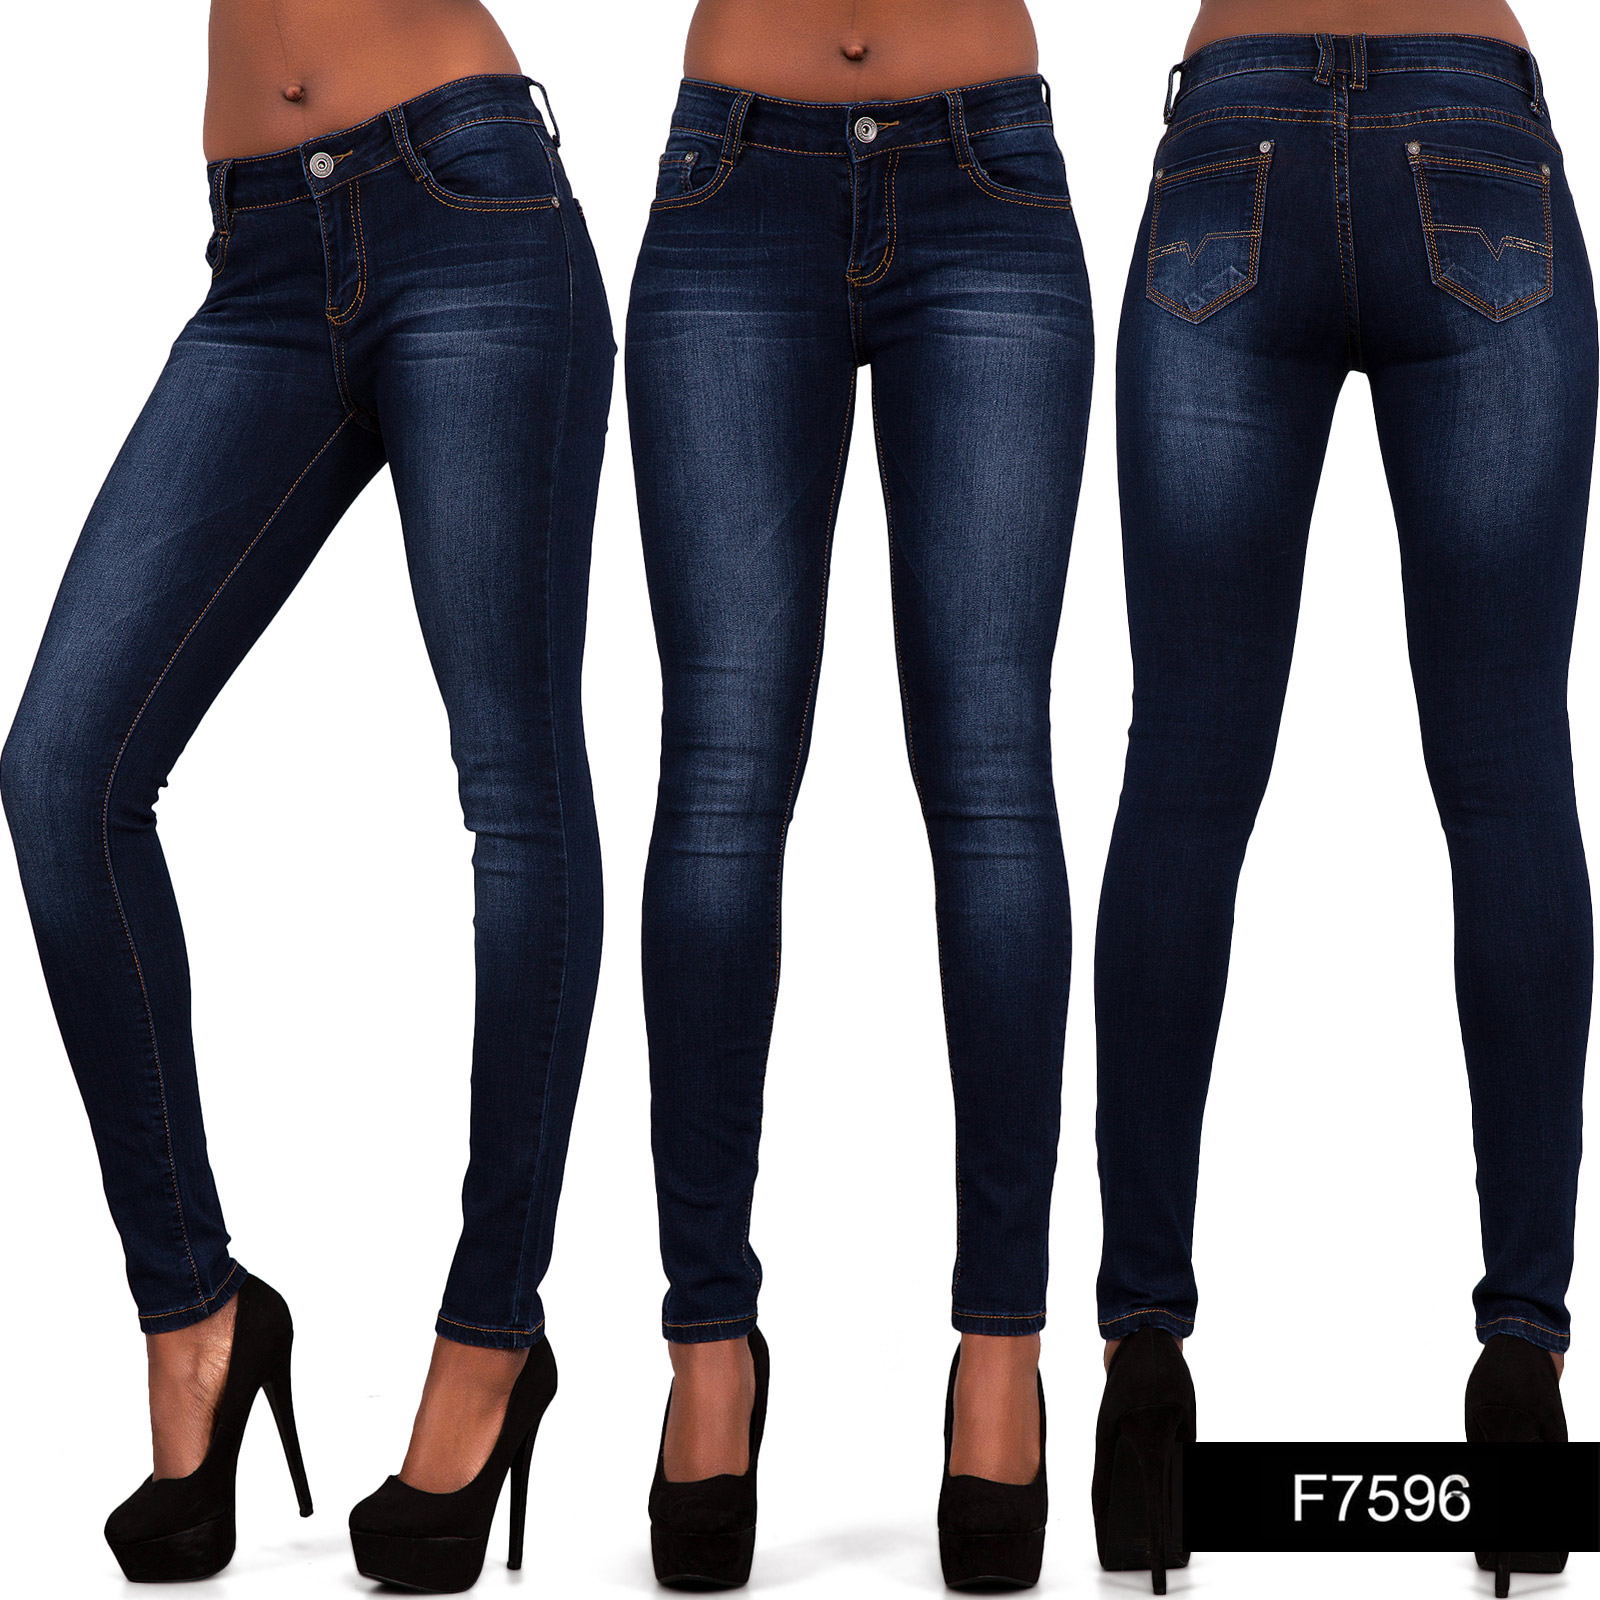 Womens Ladies Sexy High Waist Skinny Jeans Blue Stretch Denim Size 6 16 ...